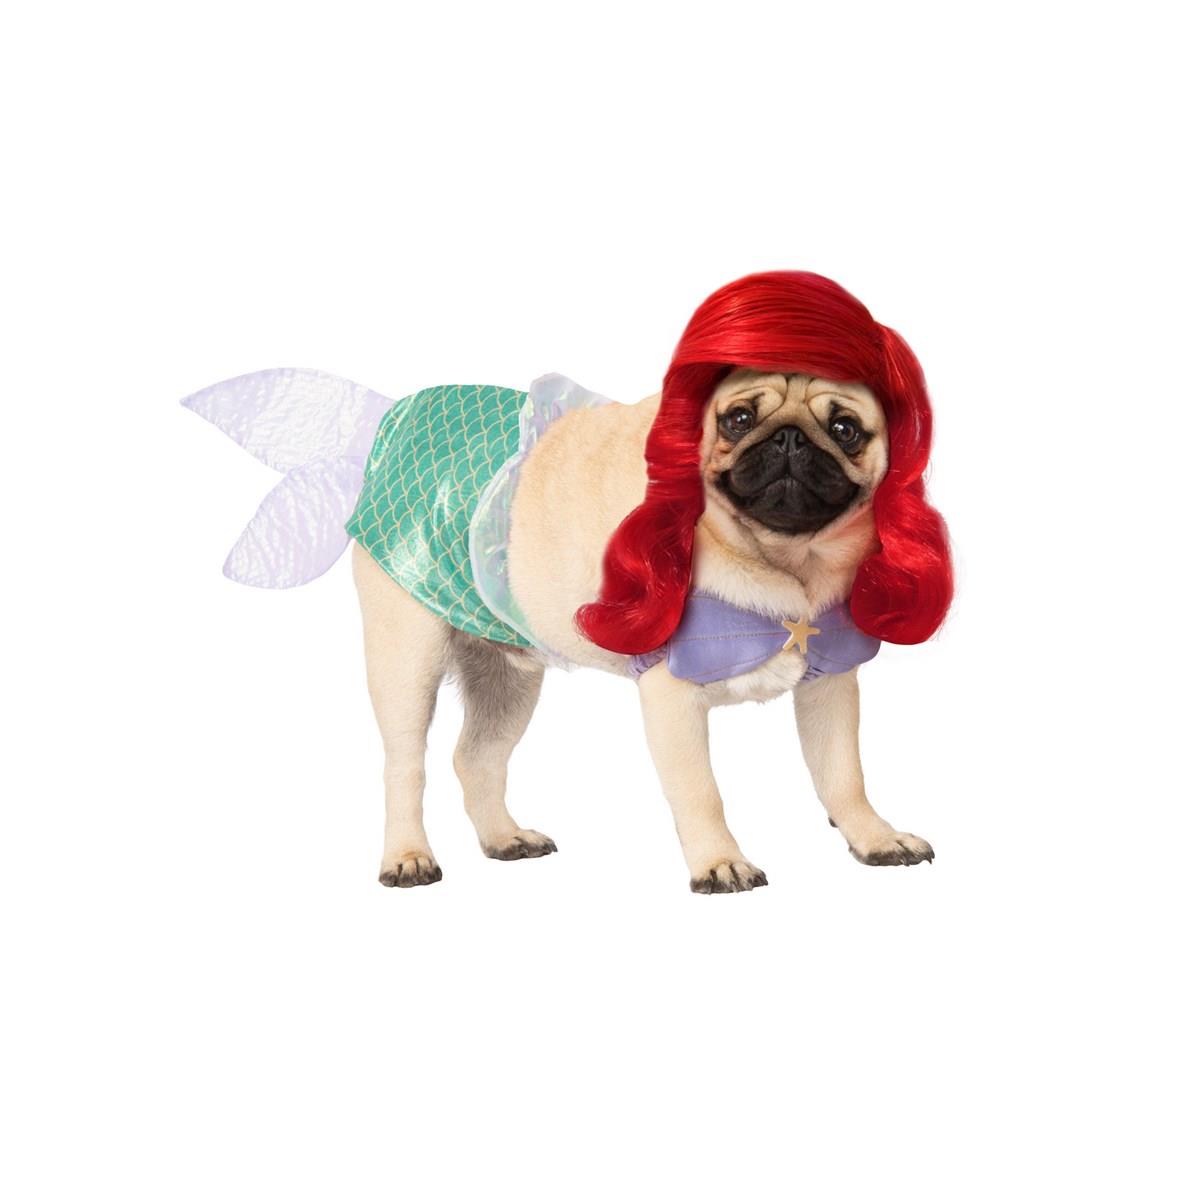 283942 Ariel Pet Costume, Medium 15